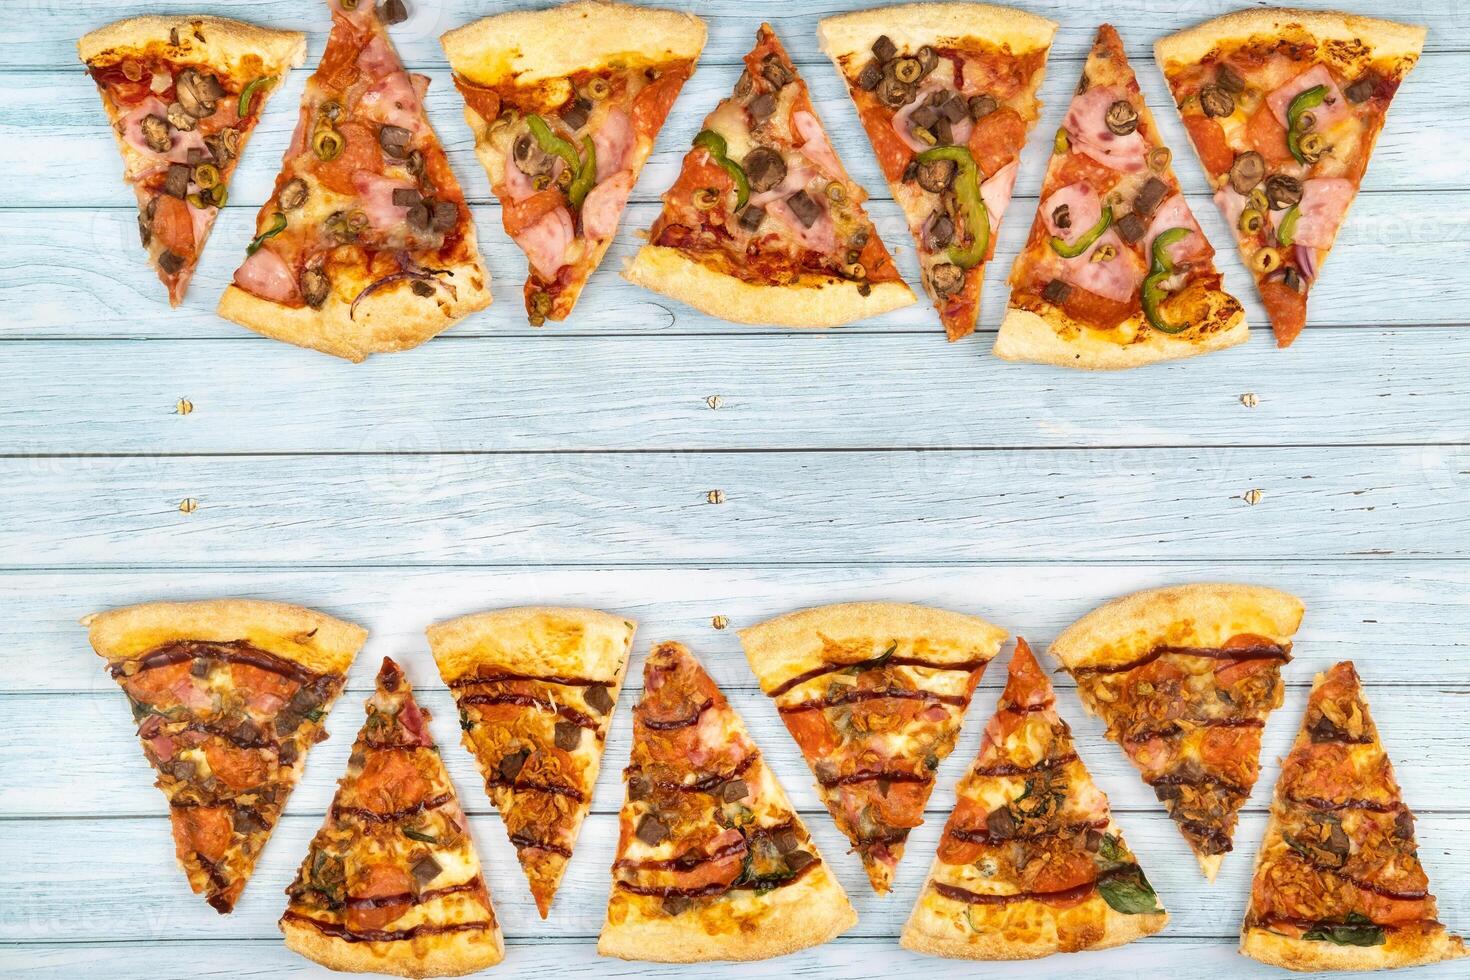 grande quantidade do delicioso triangular pizza fatias em uma azul de madeira fundo foto